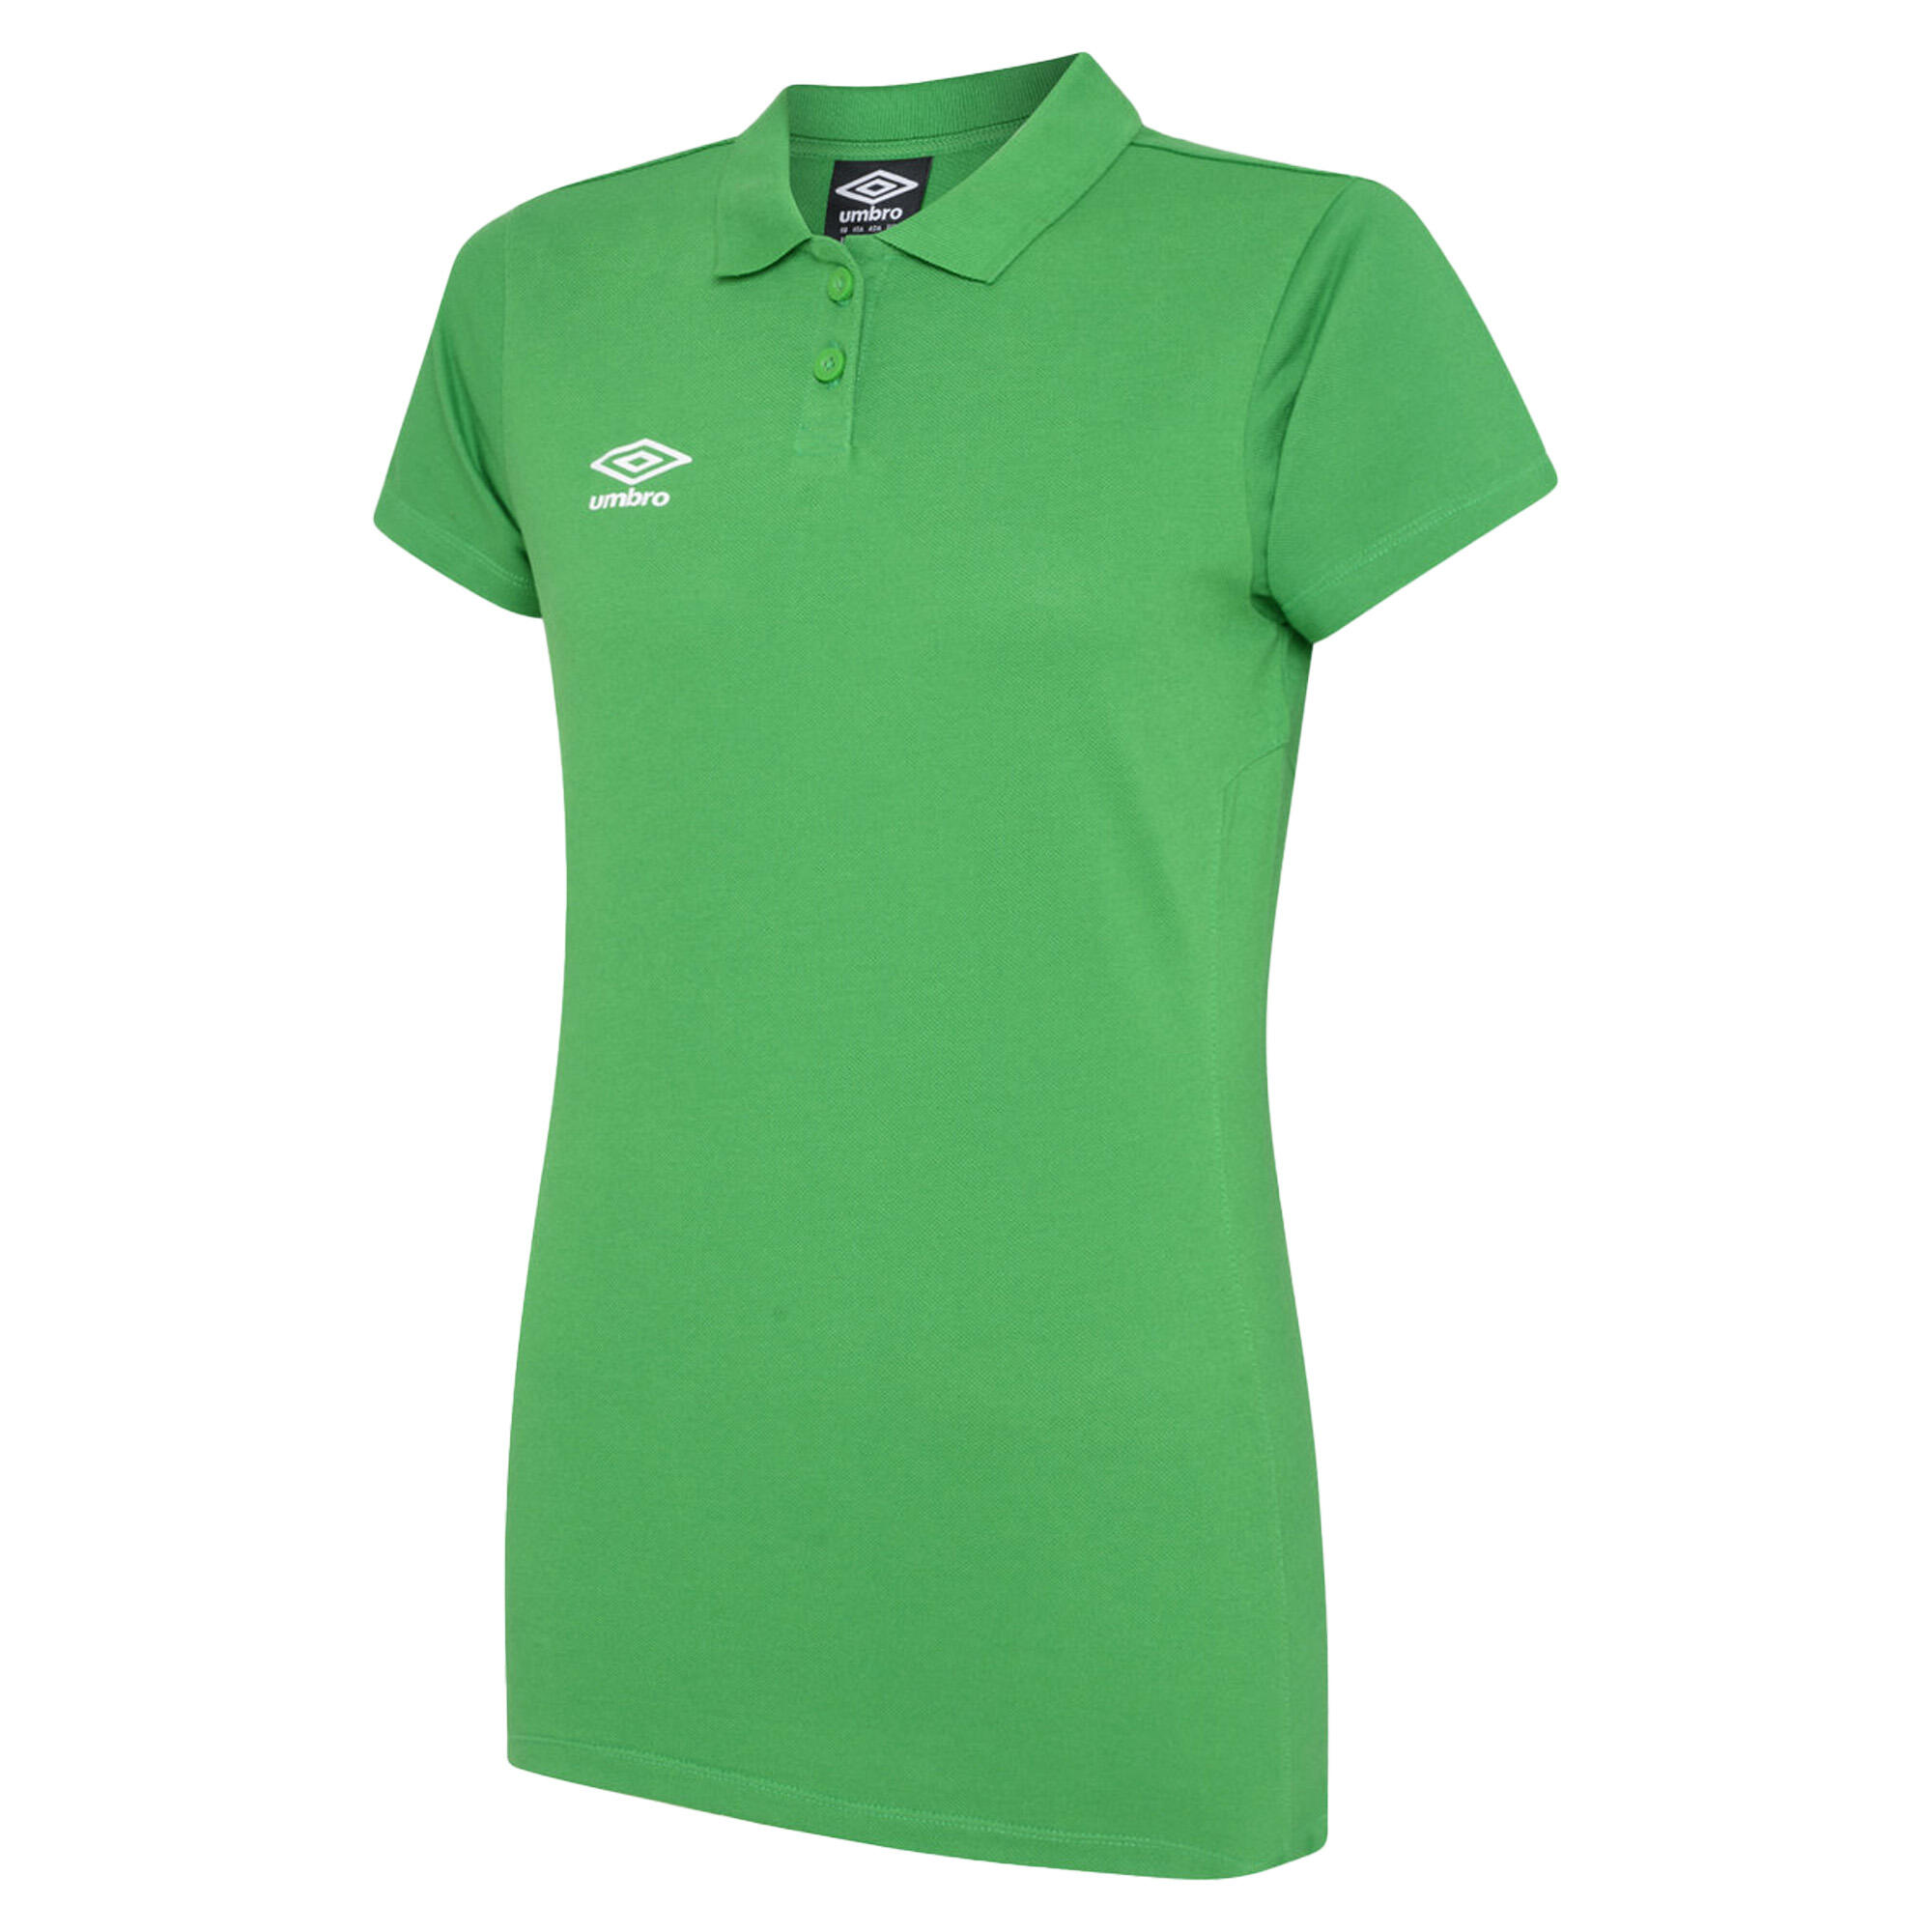 UMBRO Womens/Ladies Club Essential Polo Shirt (Emerald/White)